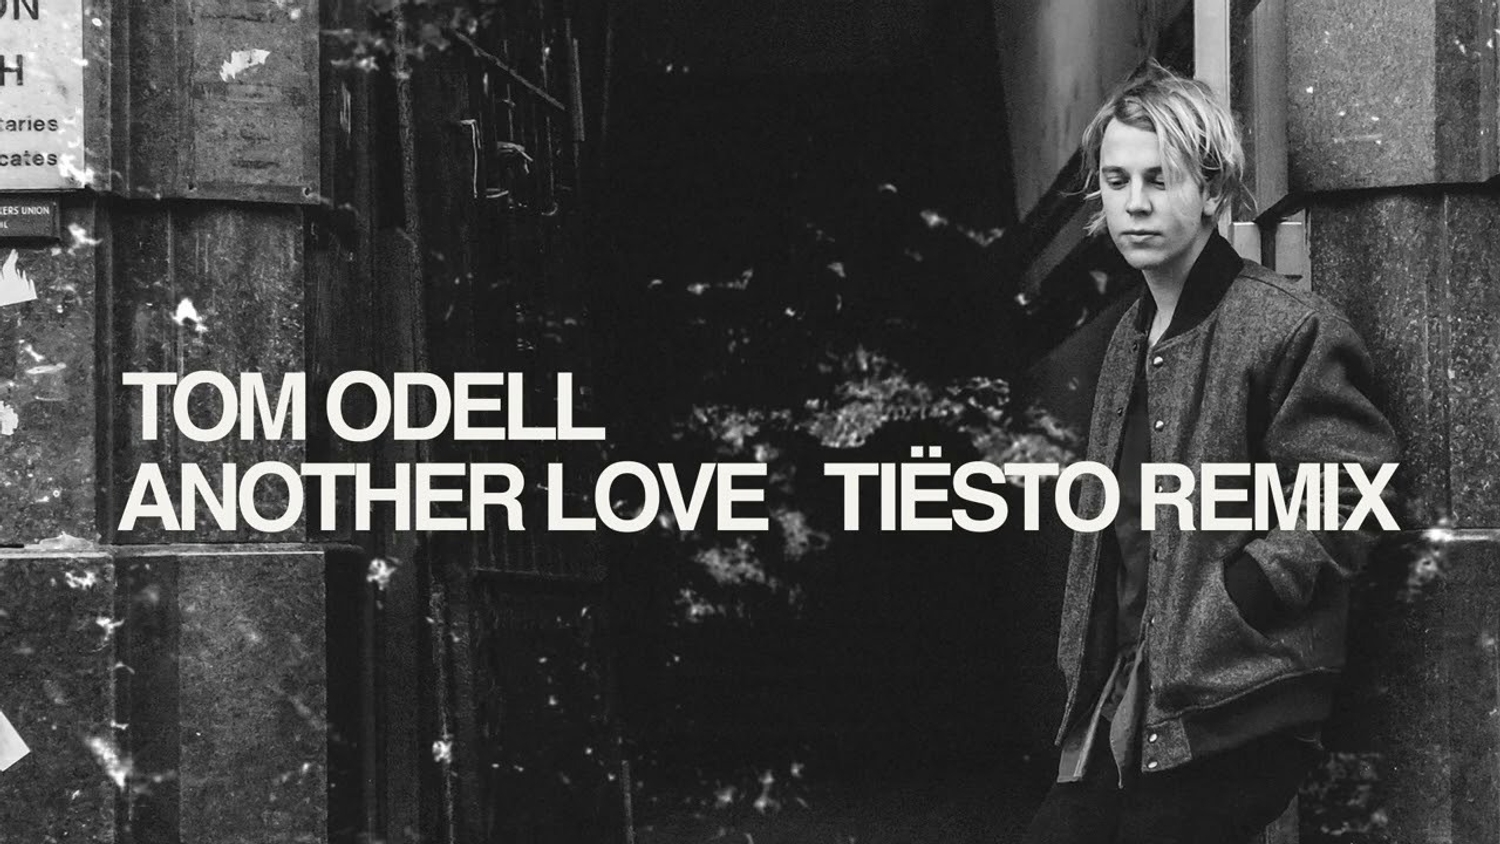 Ukraine : Tom Odell joue Another Love dans une gare, Tiësto en fait un remix solidaire